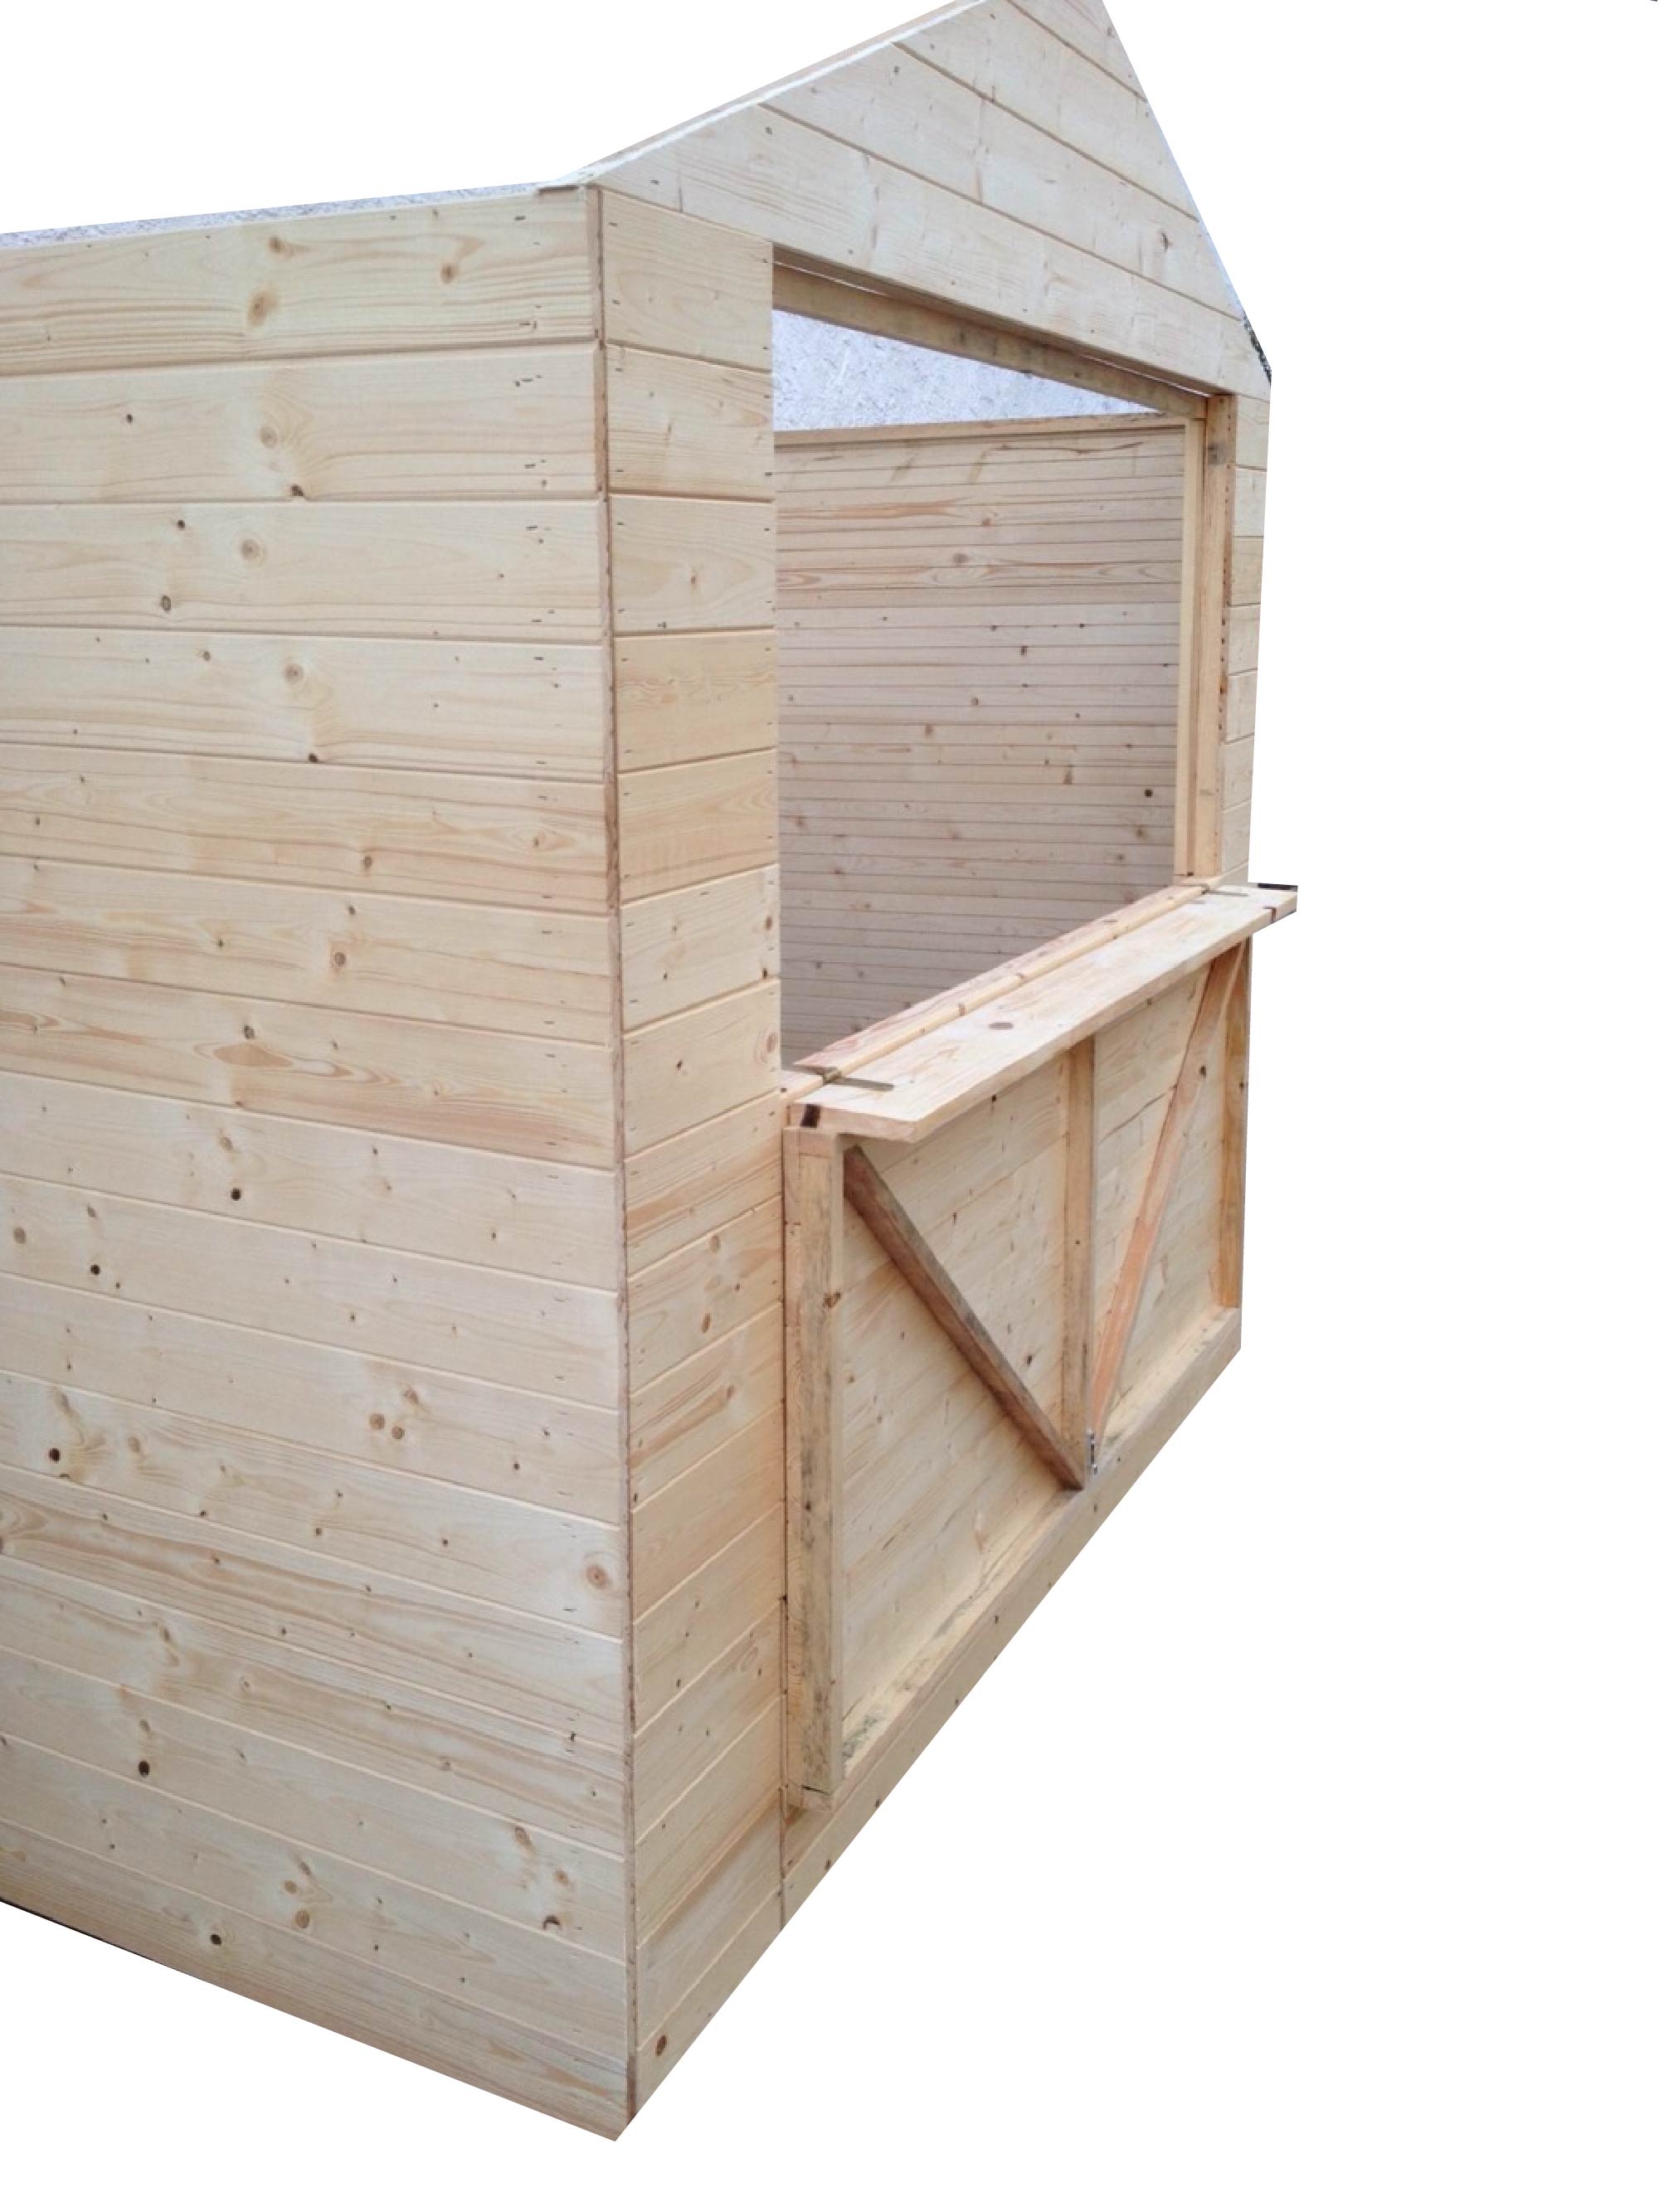 Quiosco (19mm) 3,3x3,3x2,3m (3,0x3,0m) una ventana, kiosco de madera